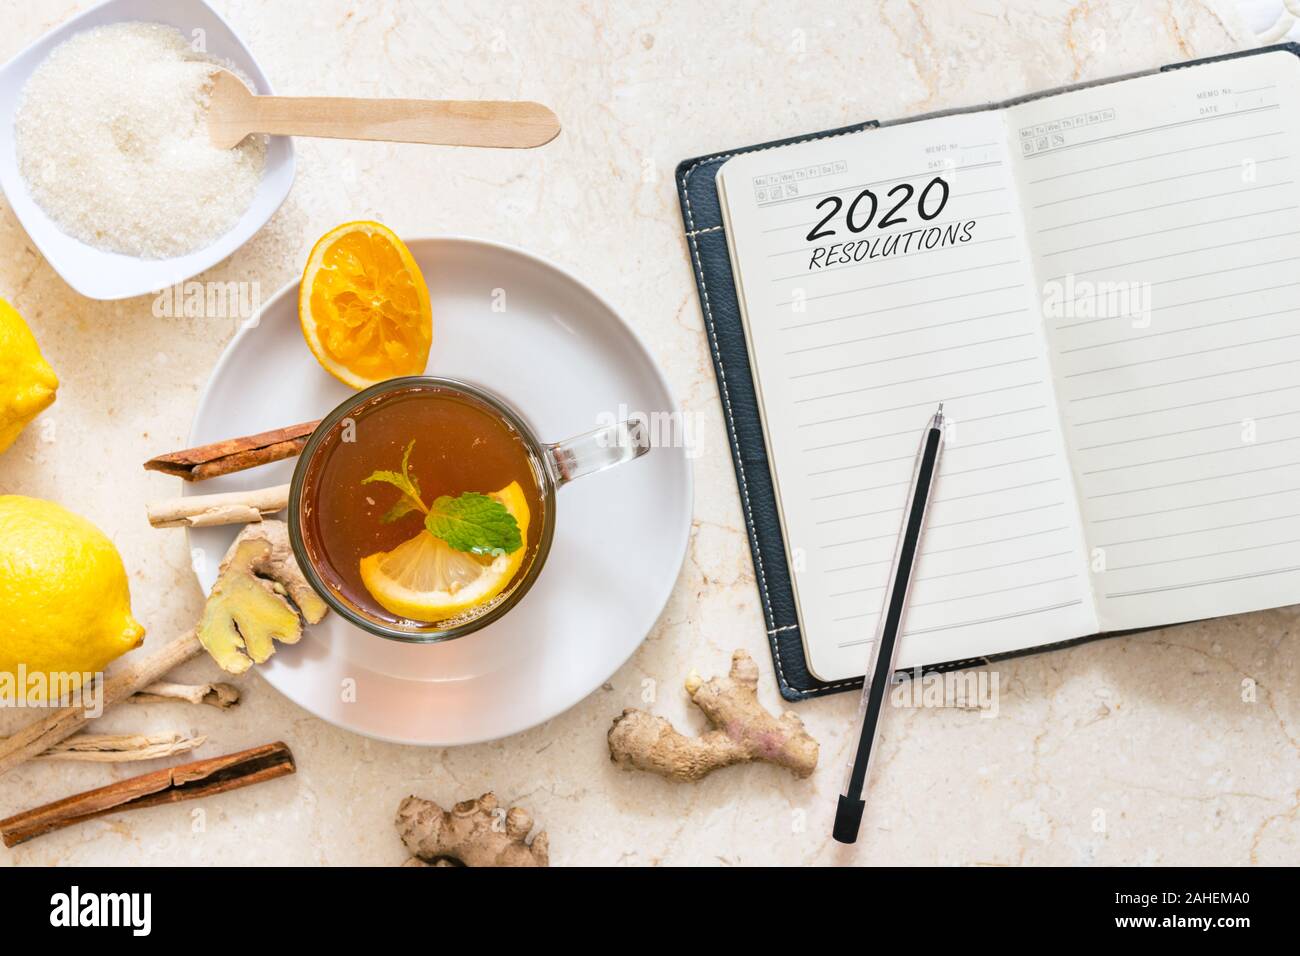 Résolutions pour la nouvelle année 2020 à plat, régime alimentaire sain concept image avec copie espace pour le texte. Banque D'Images